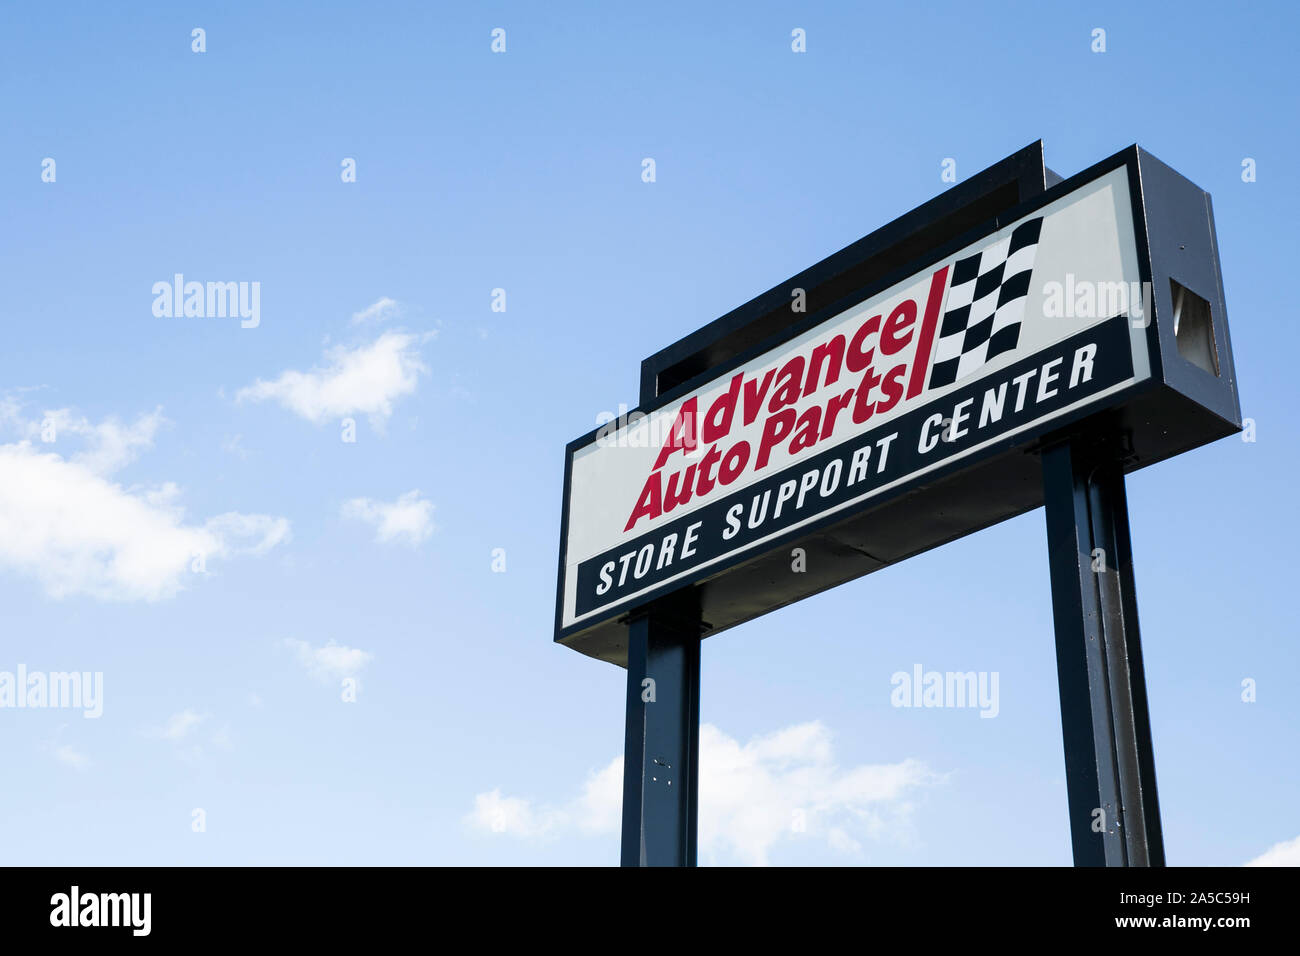 Ein logo Zeichen außerhalb des Hauptquartiers von Advance Auto Parts in Roanoke, Virginia am 15. September 2019. Stockfoto